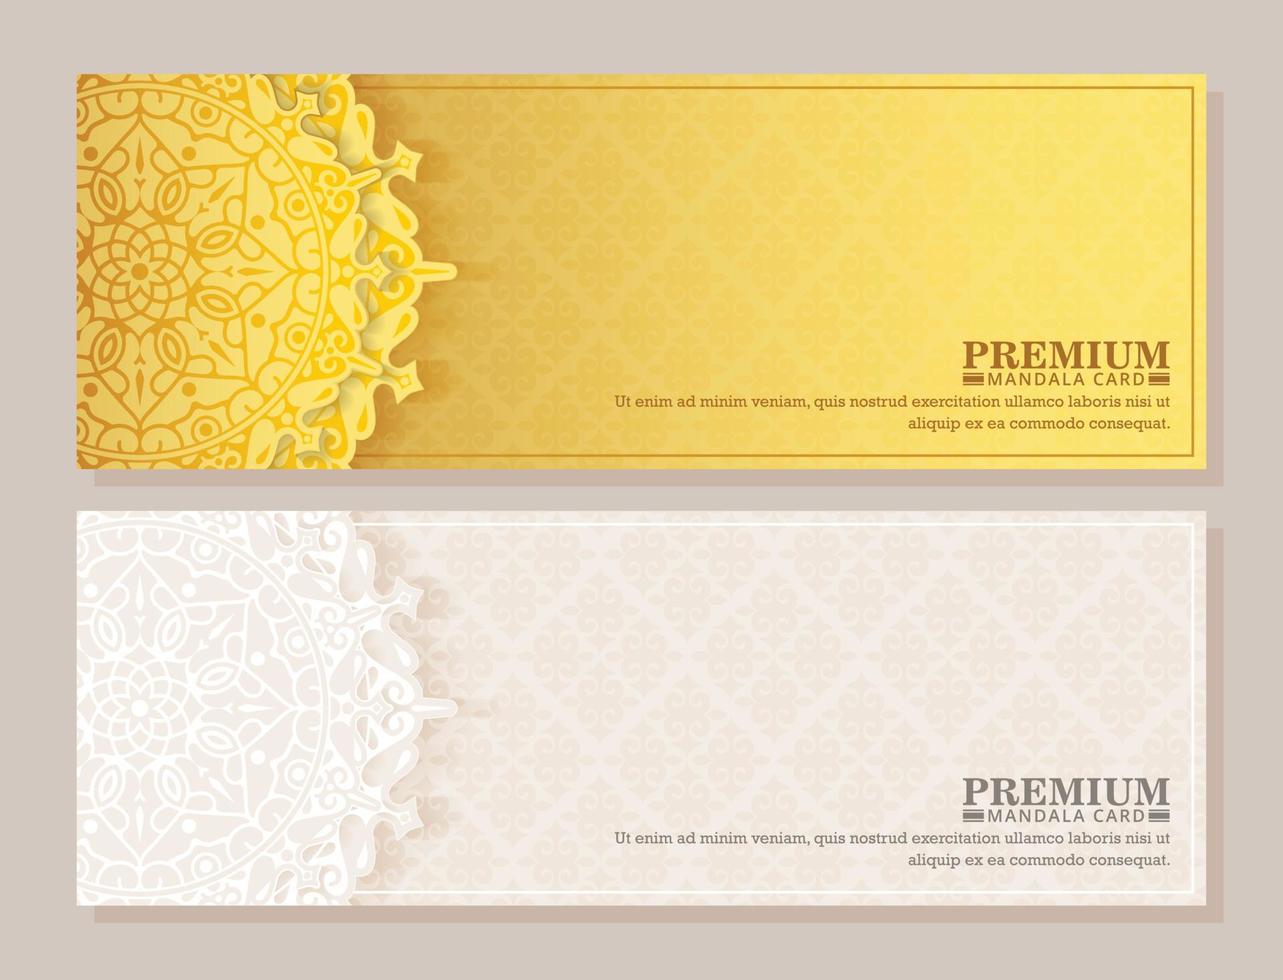 luxe gouden mandala patroon achtergrond vector